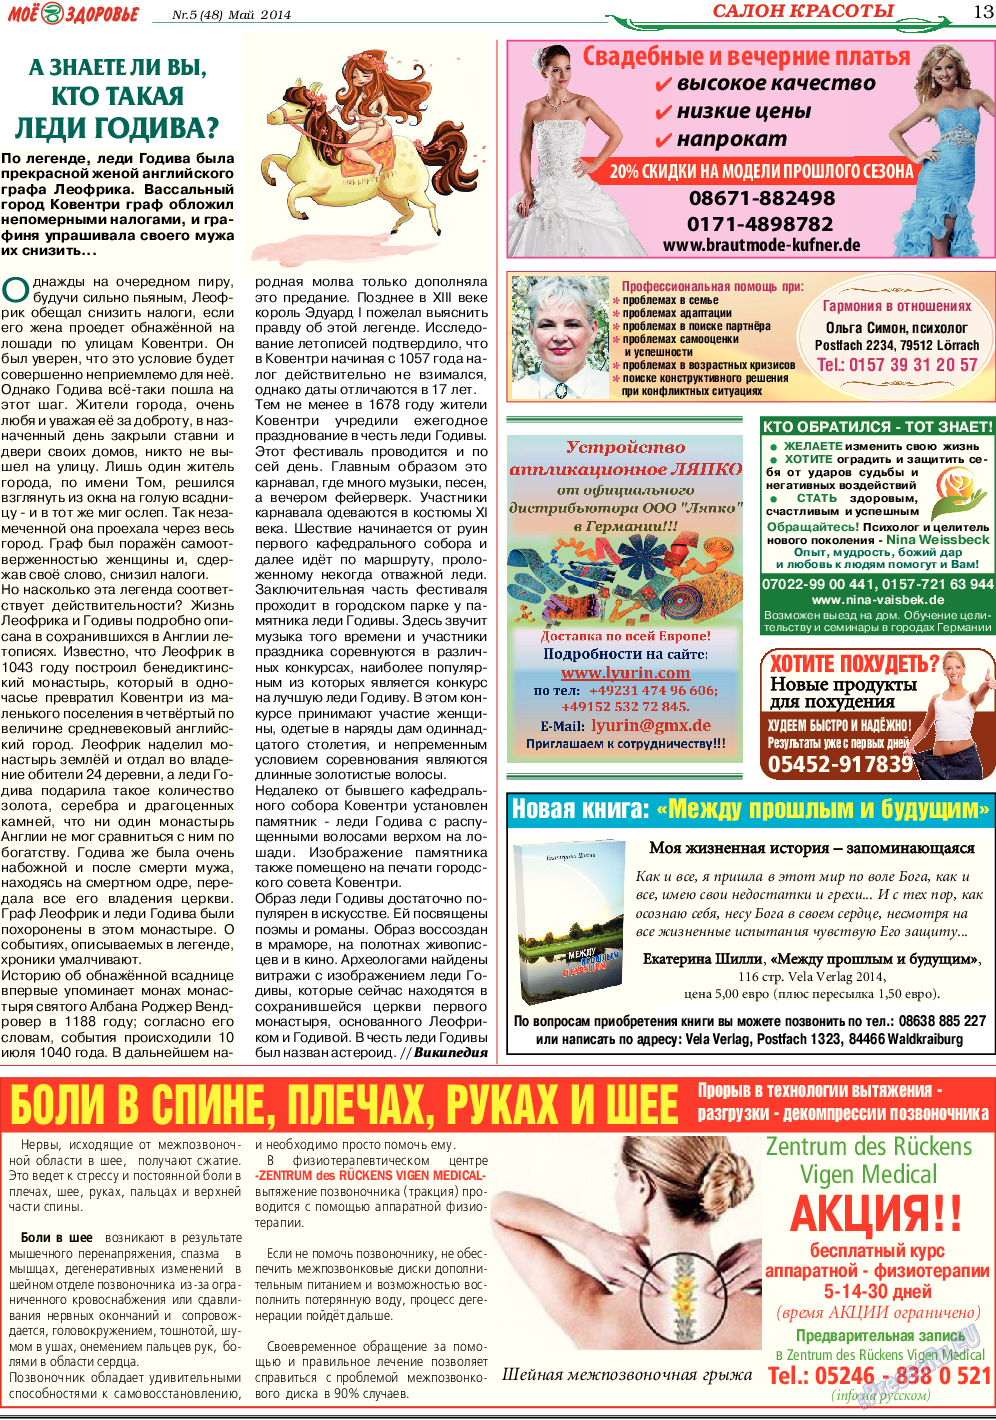 Кругозор (газета). 2014 год, номер 5, стр. 13